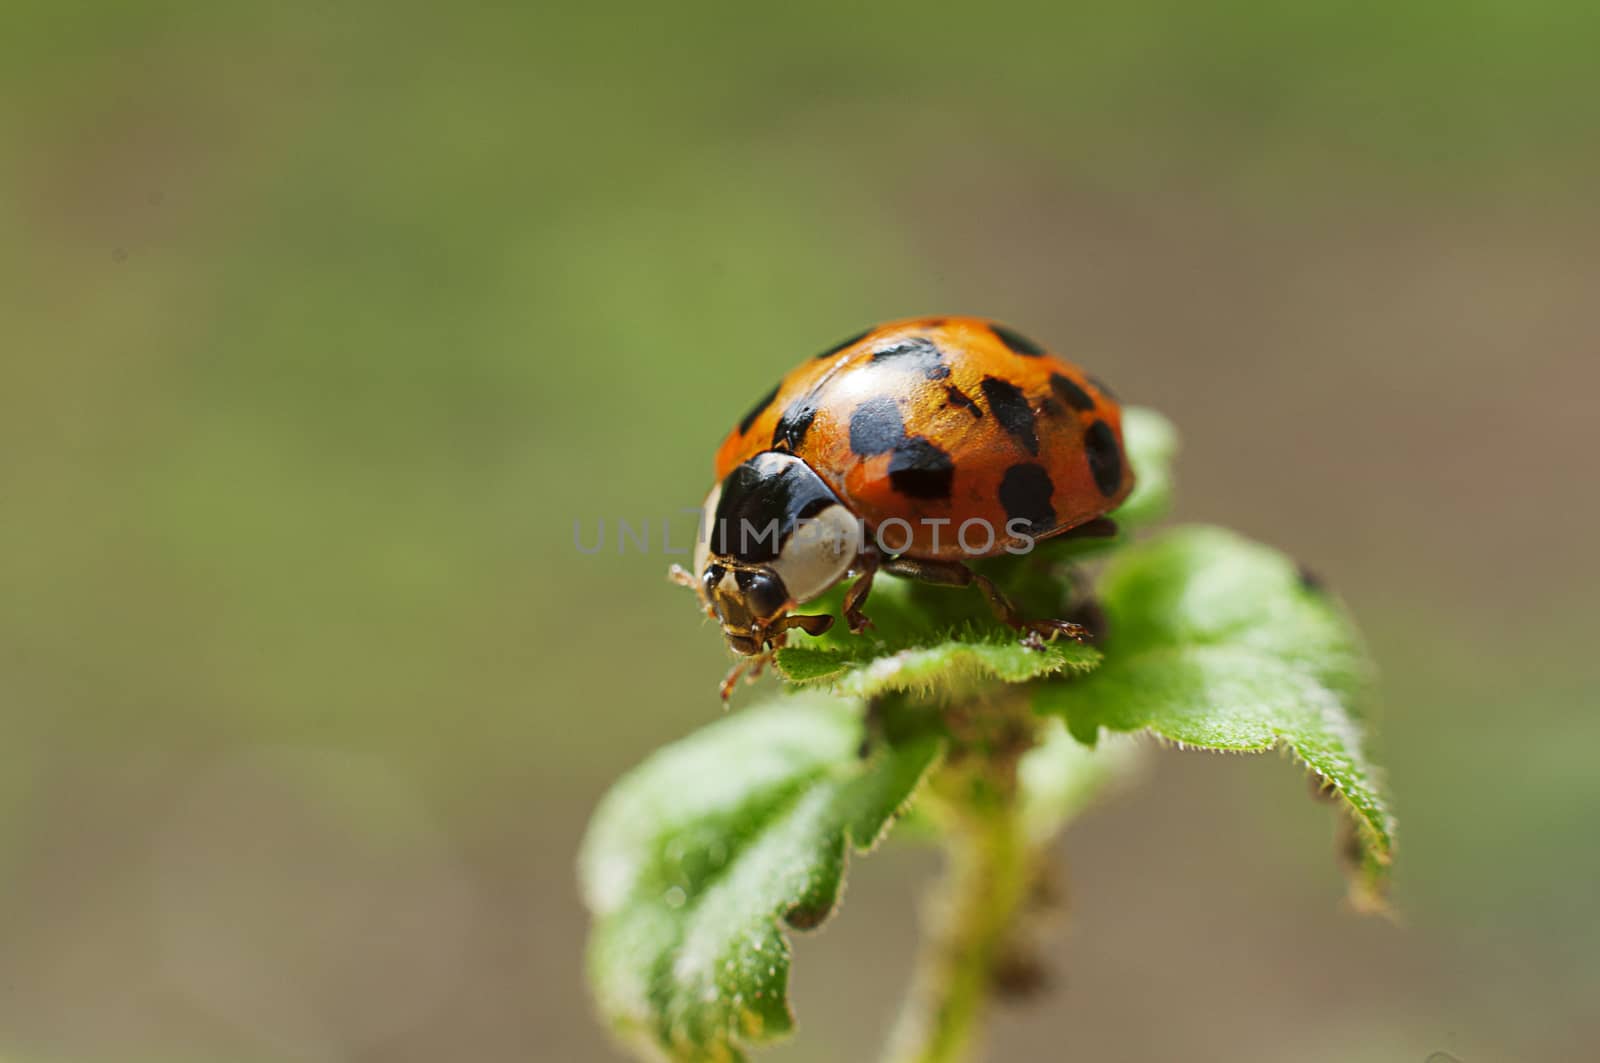 Closeup of a ladybug on a plant